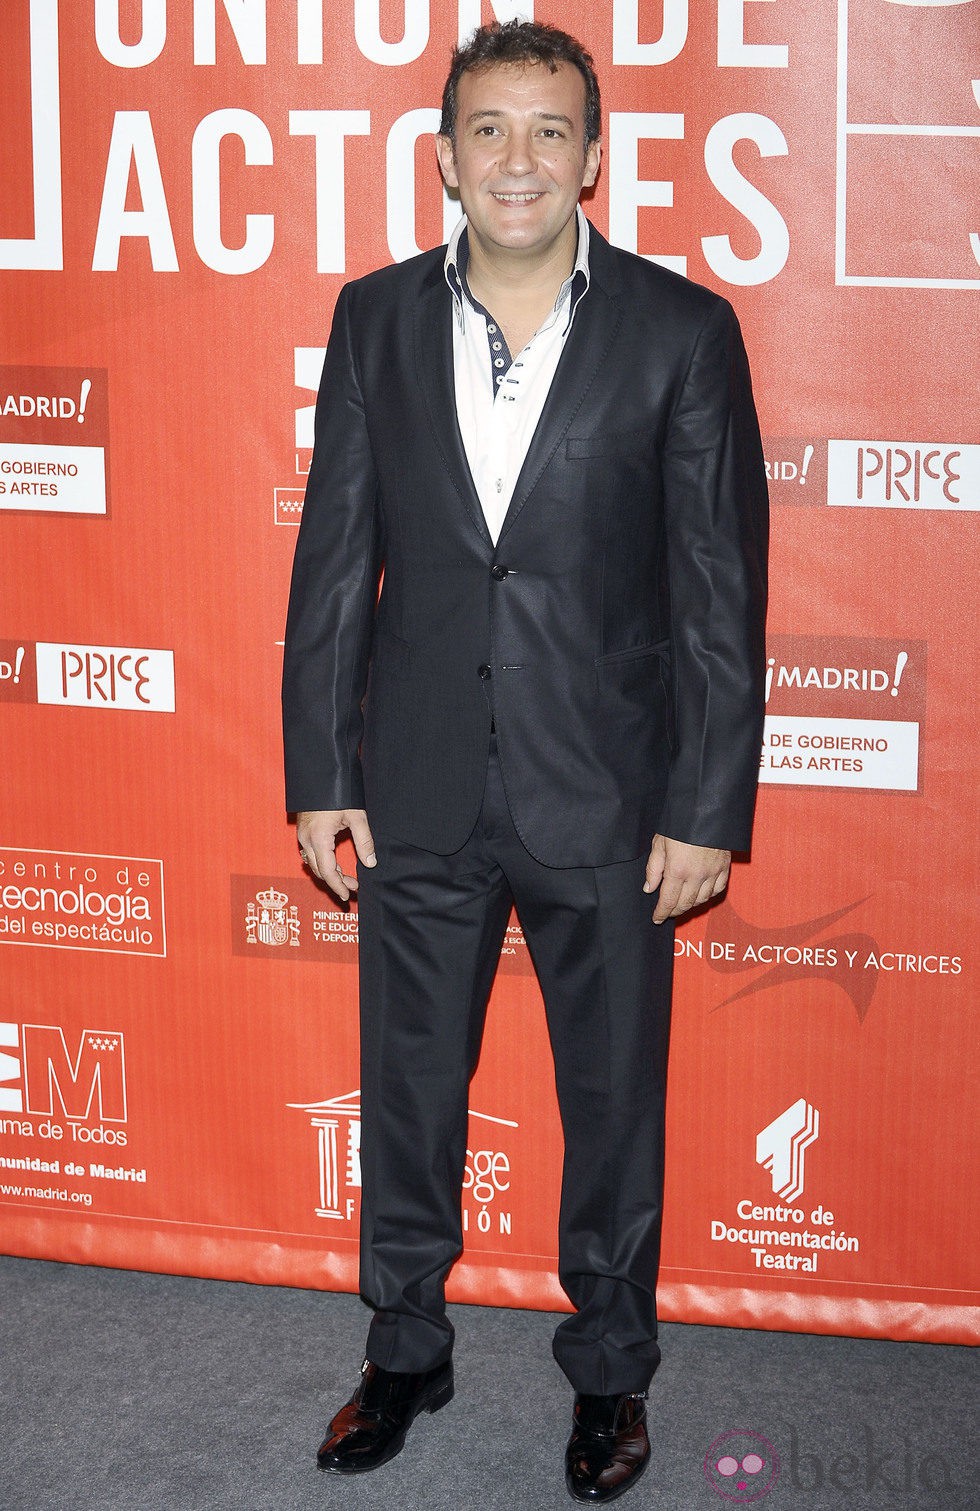 José Luis García Pérez en los Premios de la Unión de Actores 2012